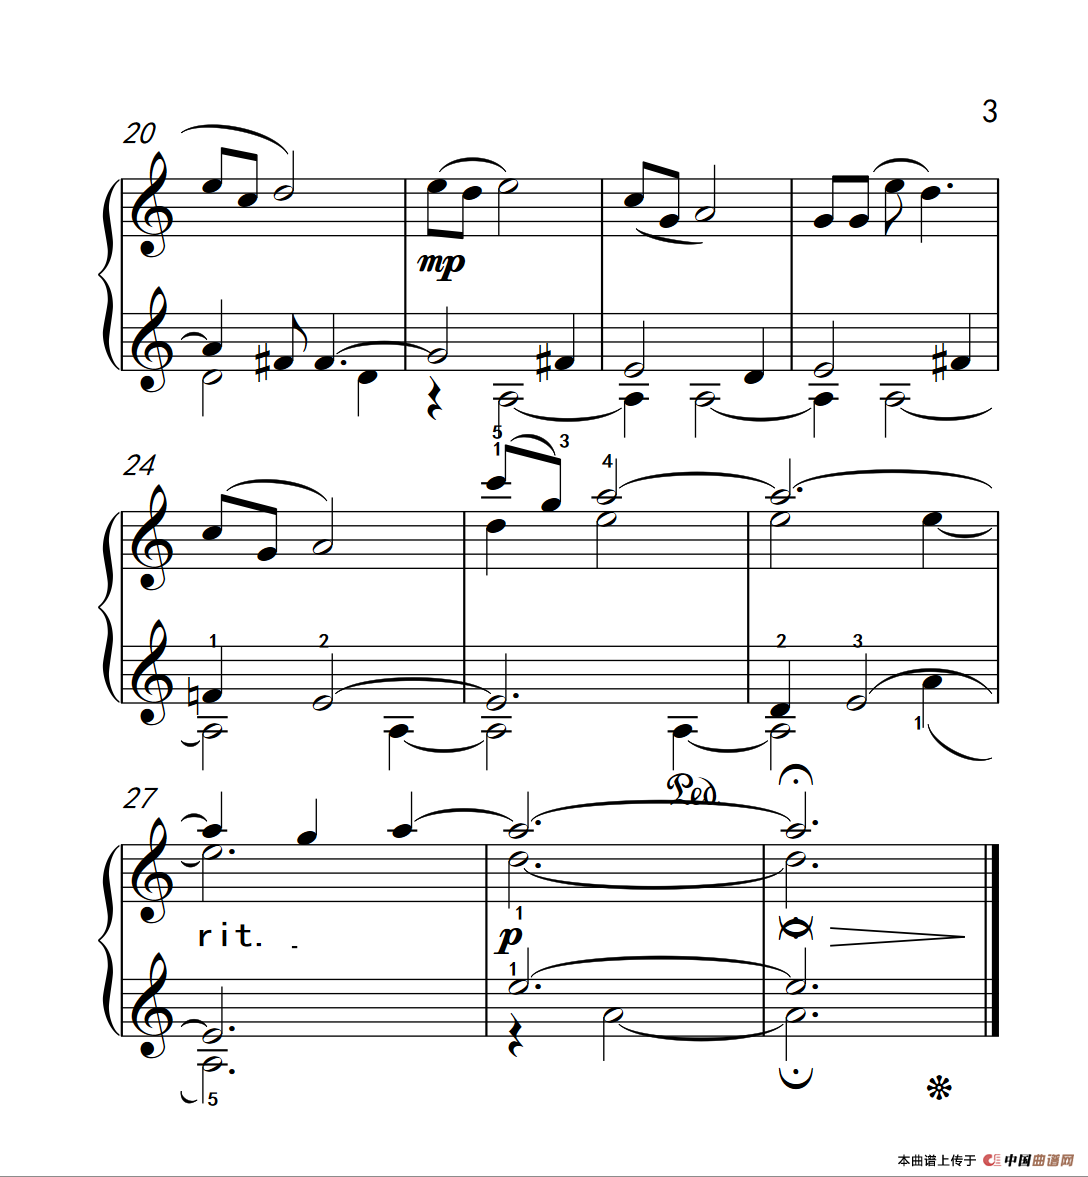 《小曲如歌》钢琴曲谱图分享